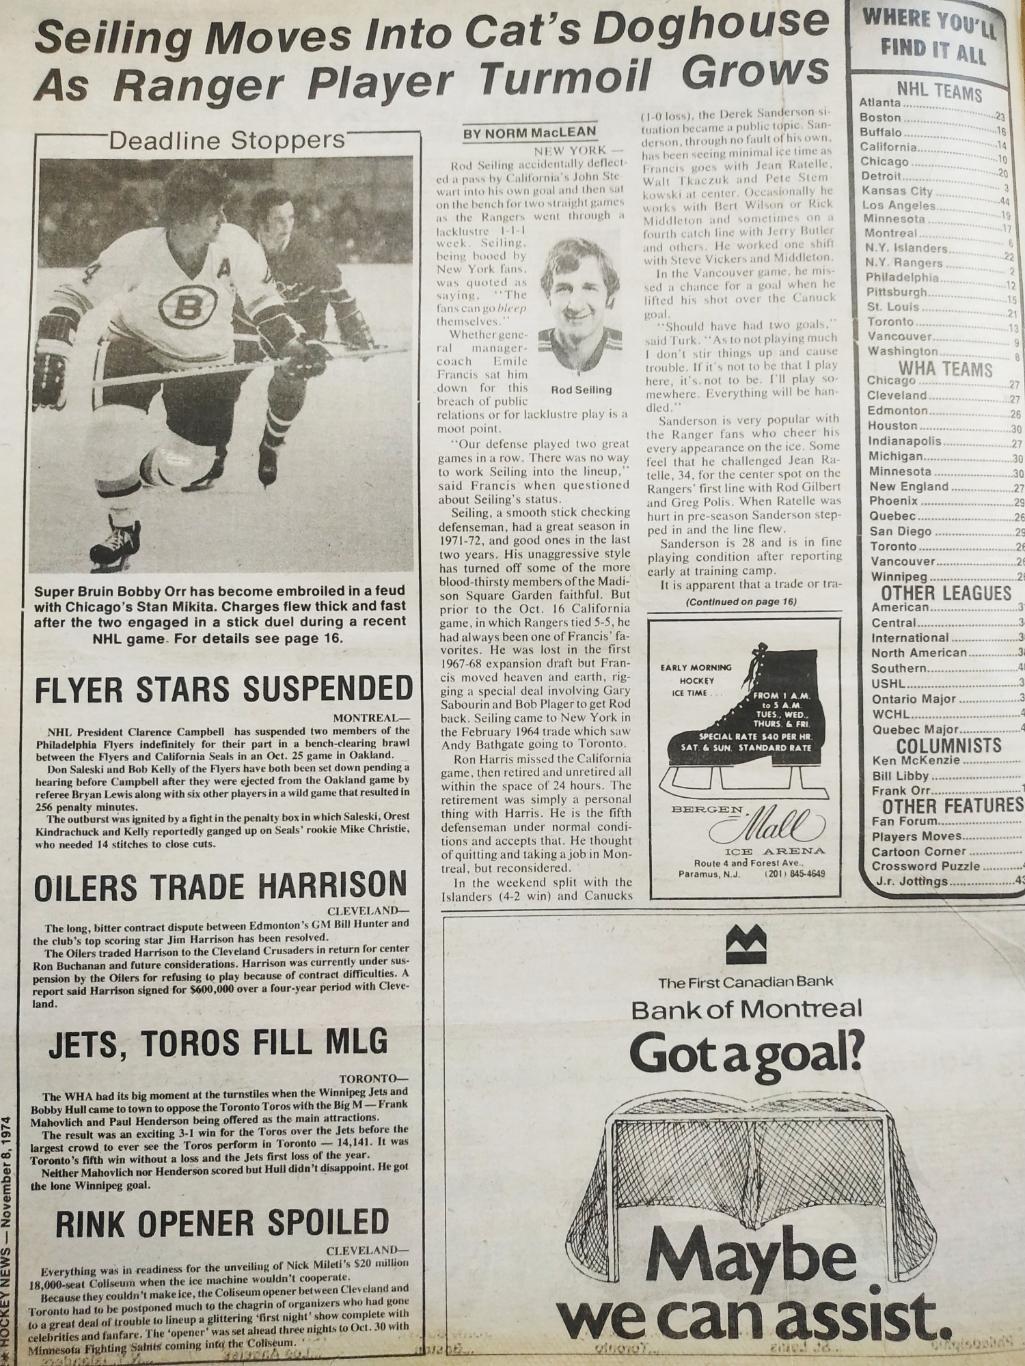 ХОККЕЙ ЖУРНАЛ ЕЖЕНЕДЕЛЬНИК НХЛ НОВОСТИ ХОККЕЯ NOV.8 1974 NHL THE HOCKEY NEWS 1